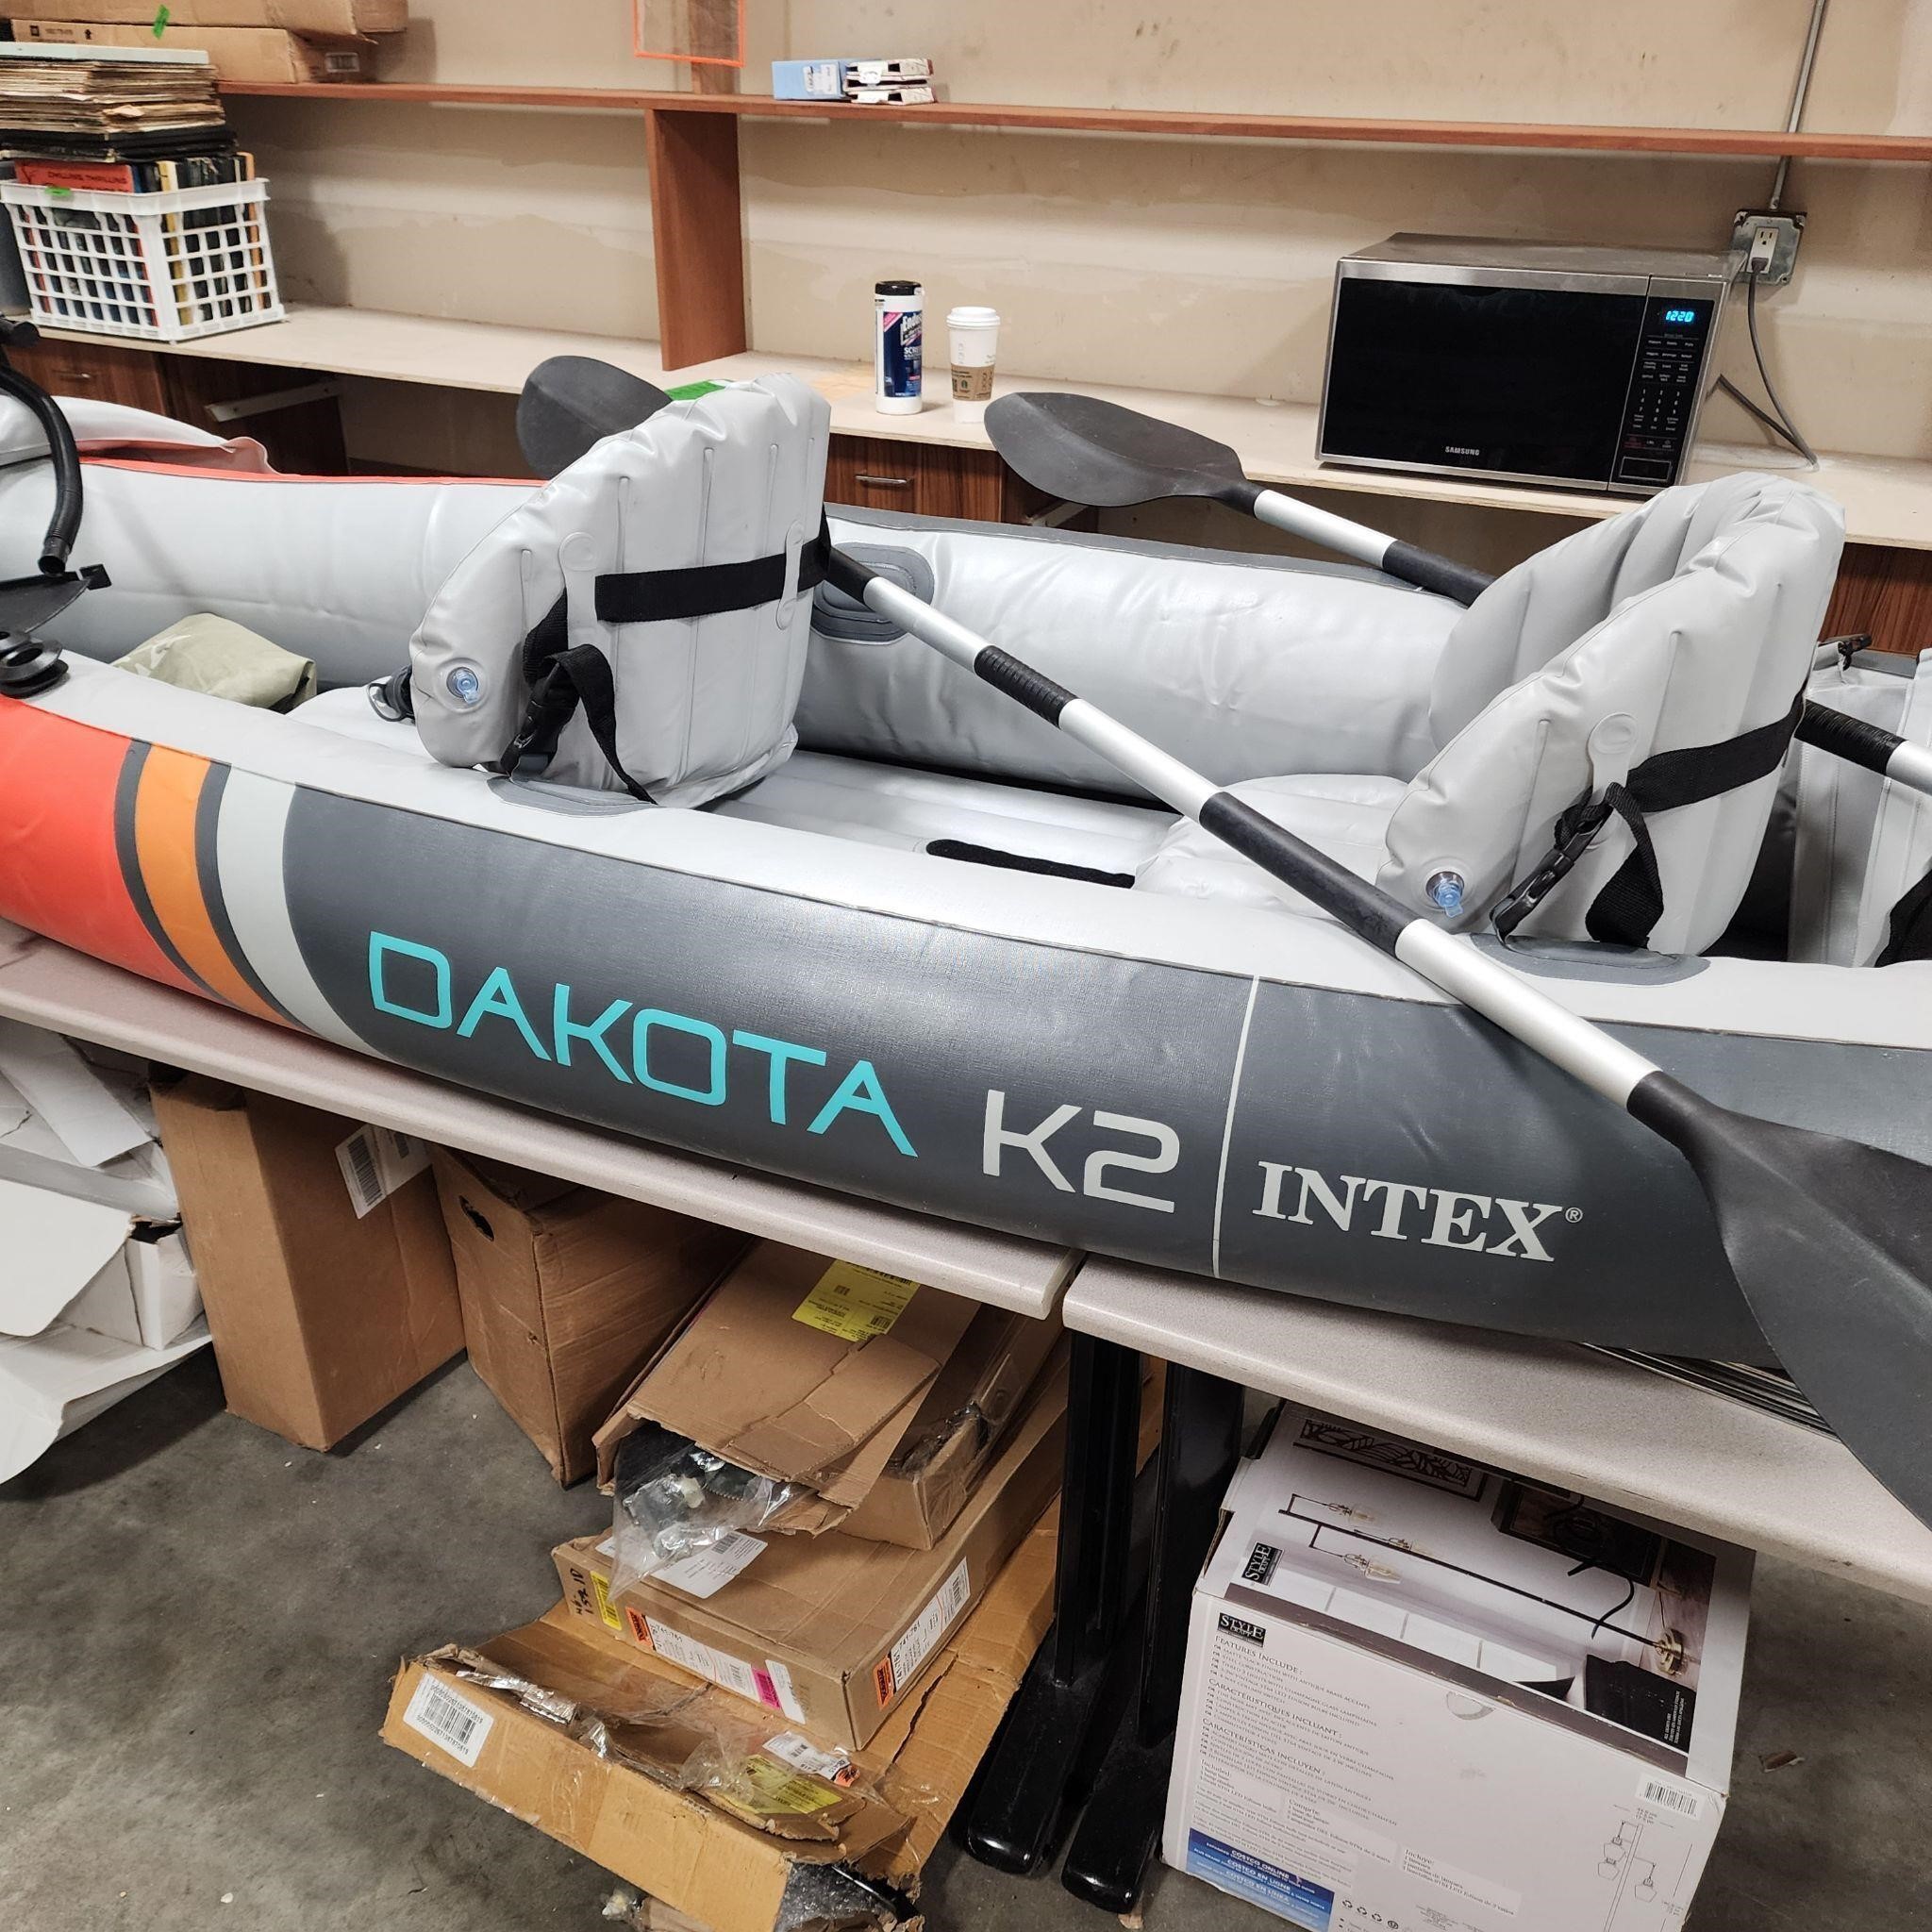 Intex Dakota K2 kayak